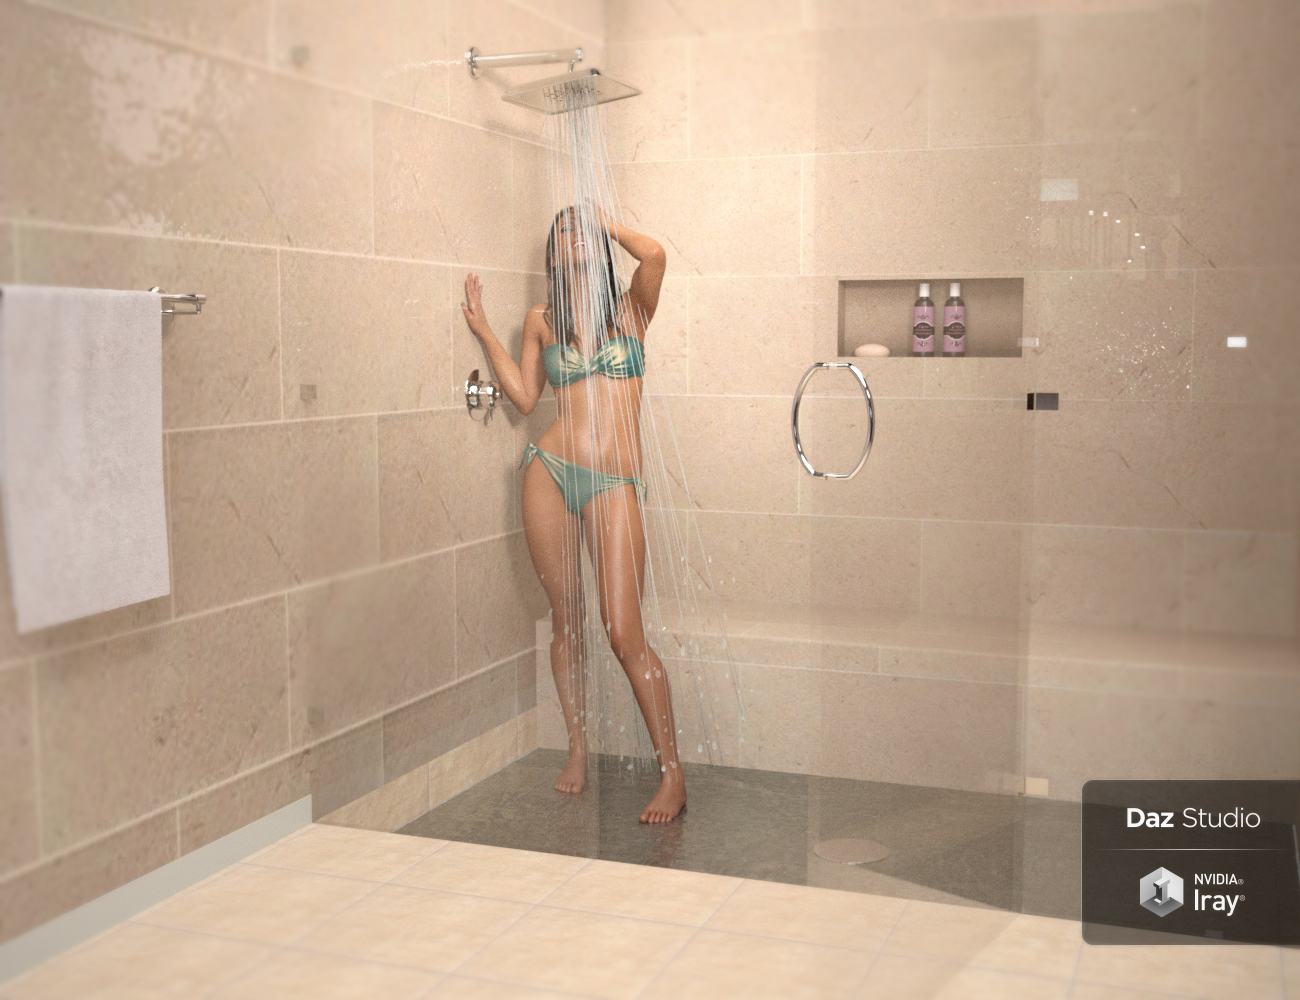 IG Luxury Bathroom by: Valery3Di3D_Lotus, 3D Models by Daz 3D